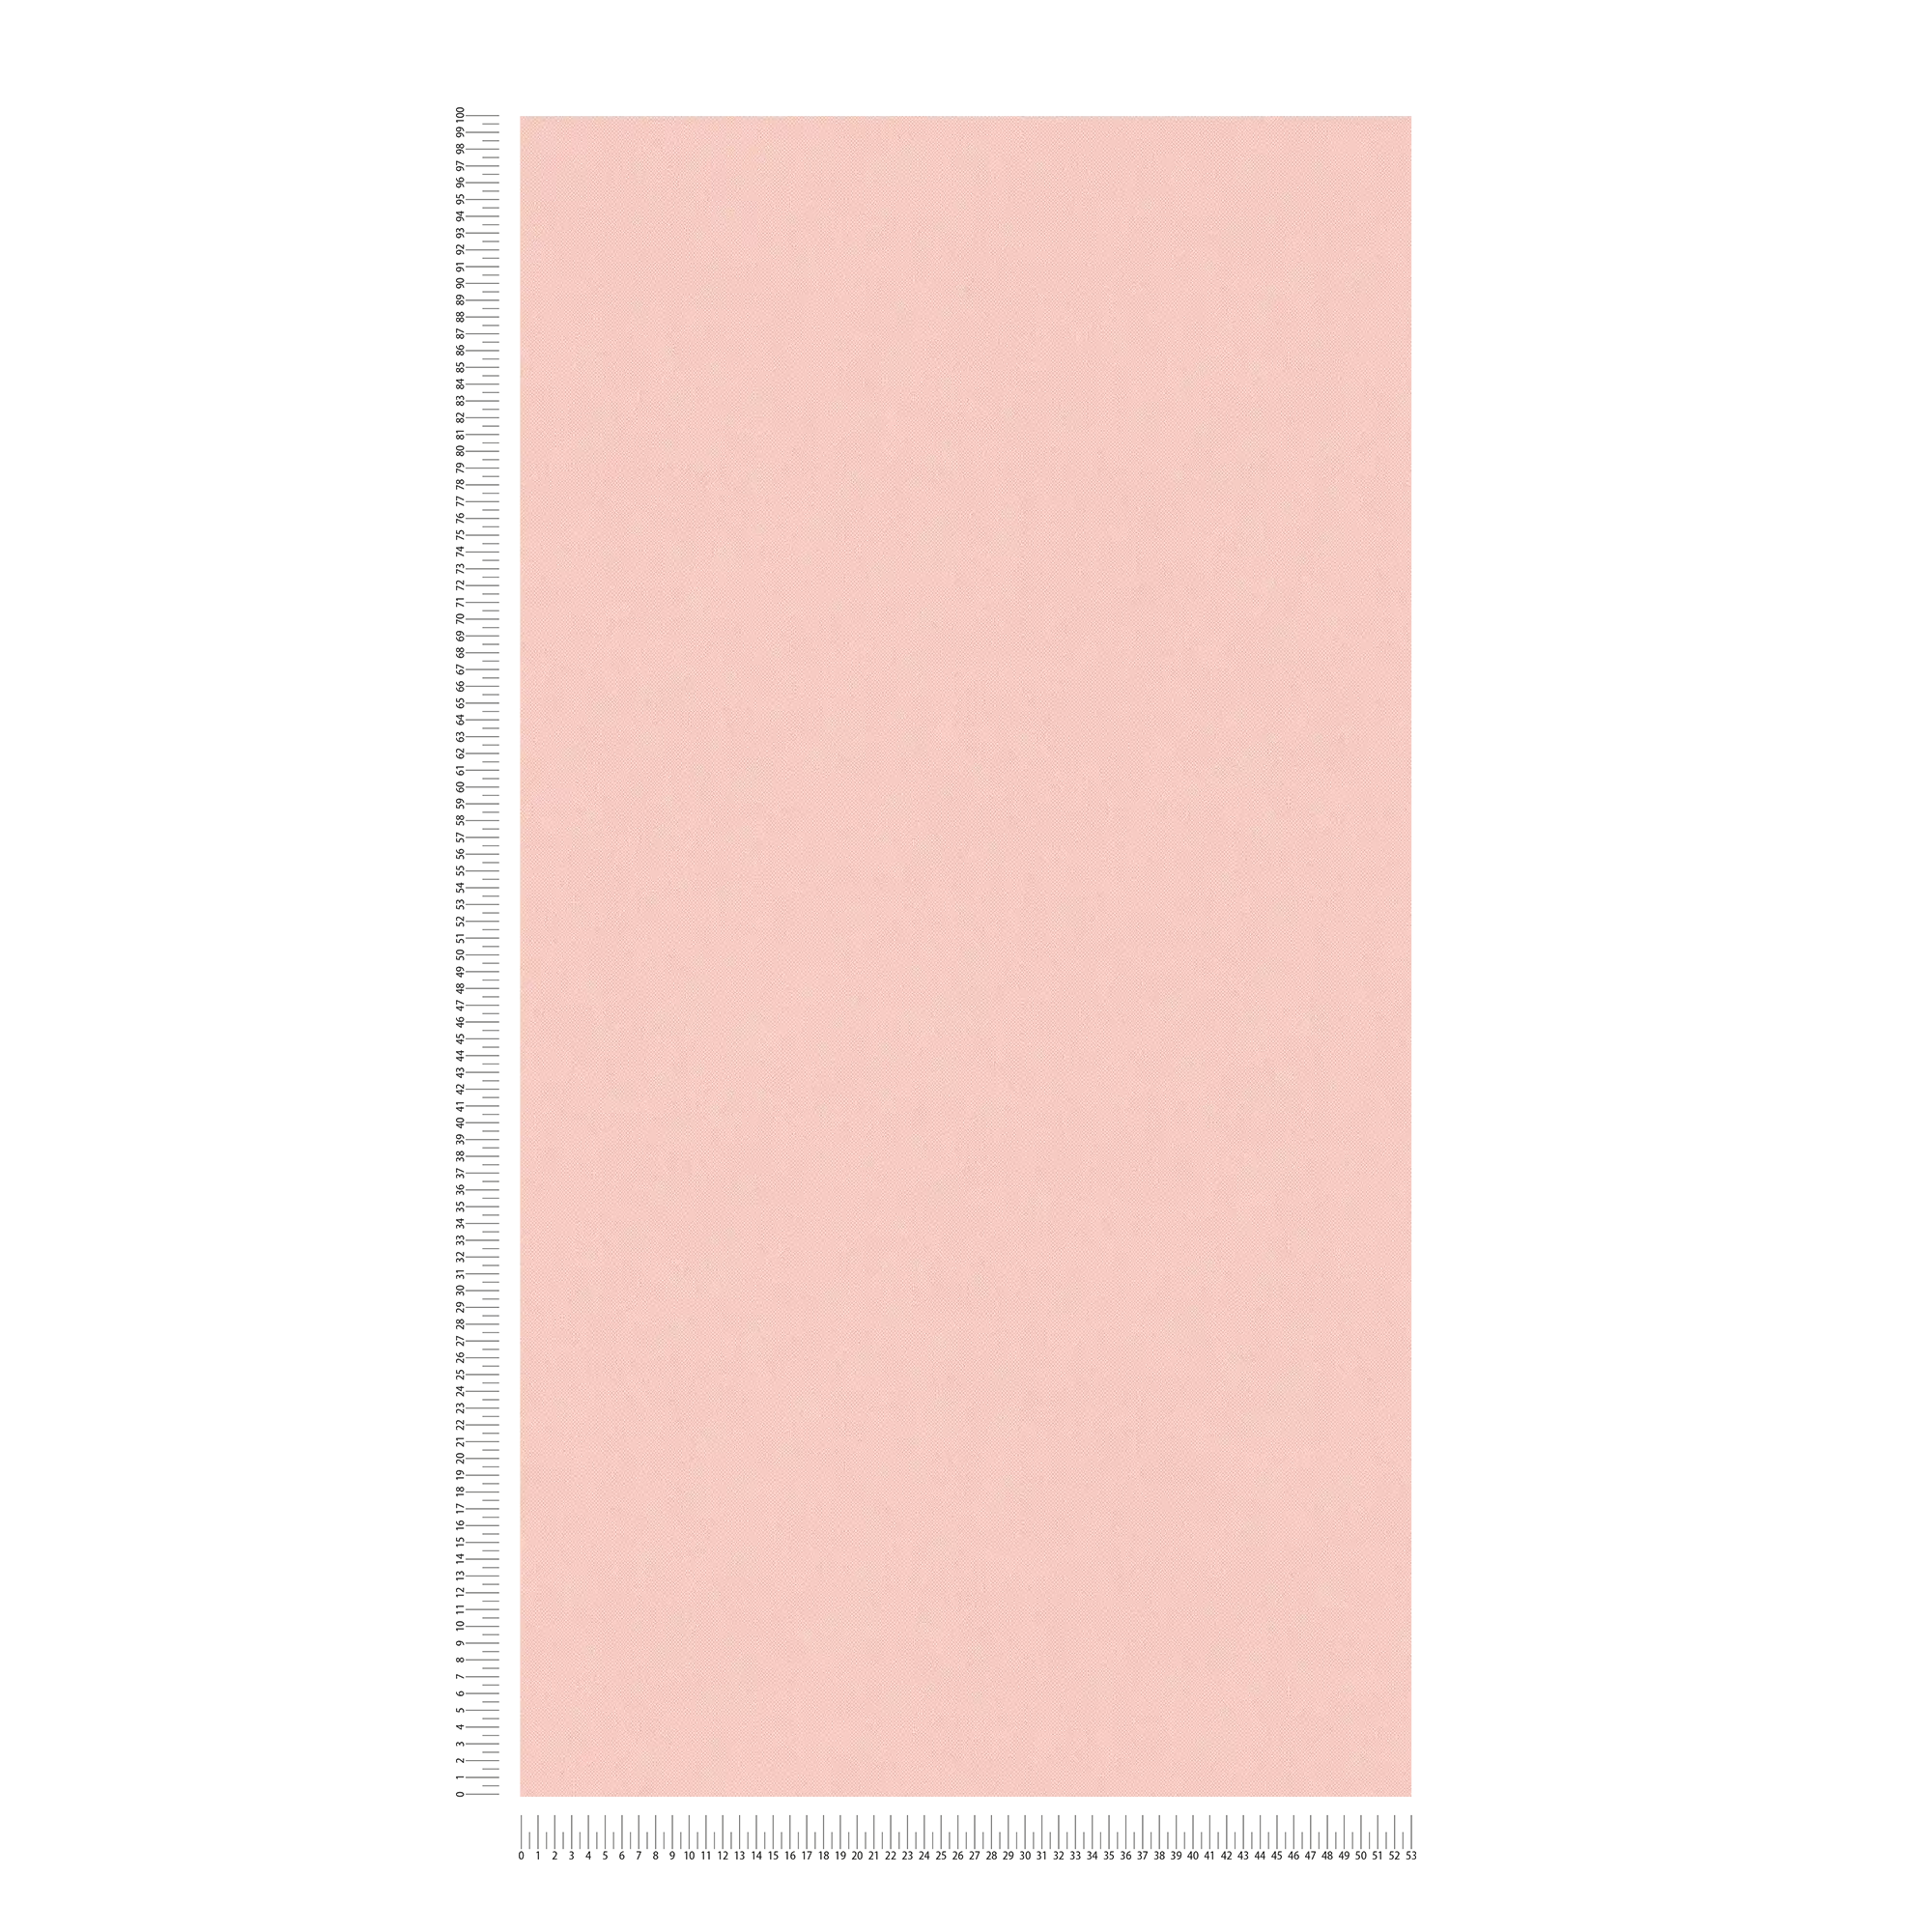             Papel pintado rosa pastel con estructura de lino y aspecto textil - rosa
        